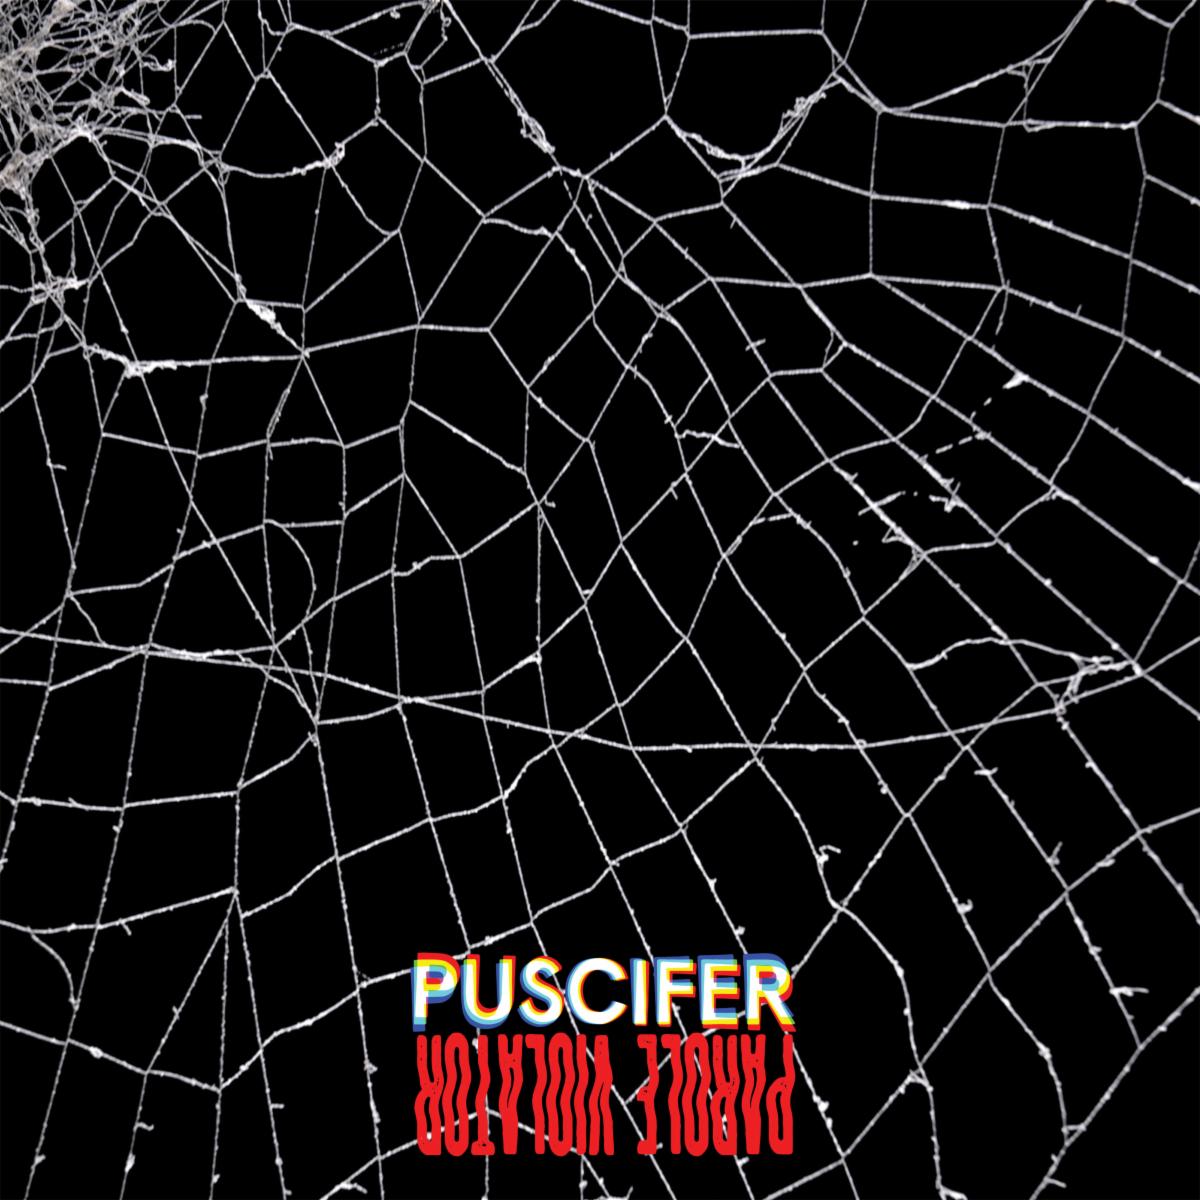 Puscifer Release "V is for Versatile" & "Parole Violator" Albums; Watch "Indigo Children" Video